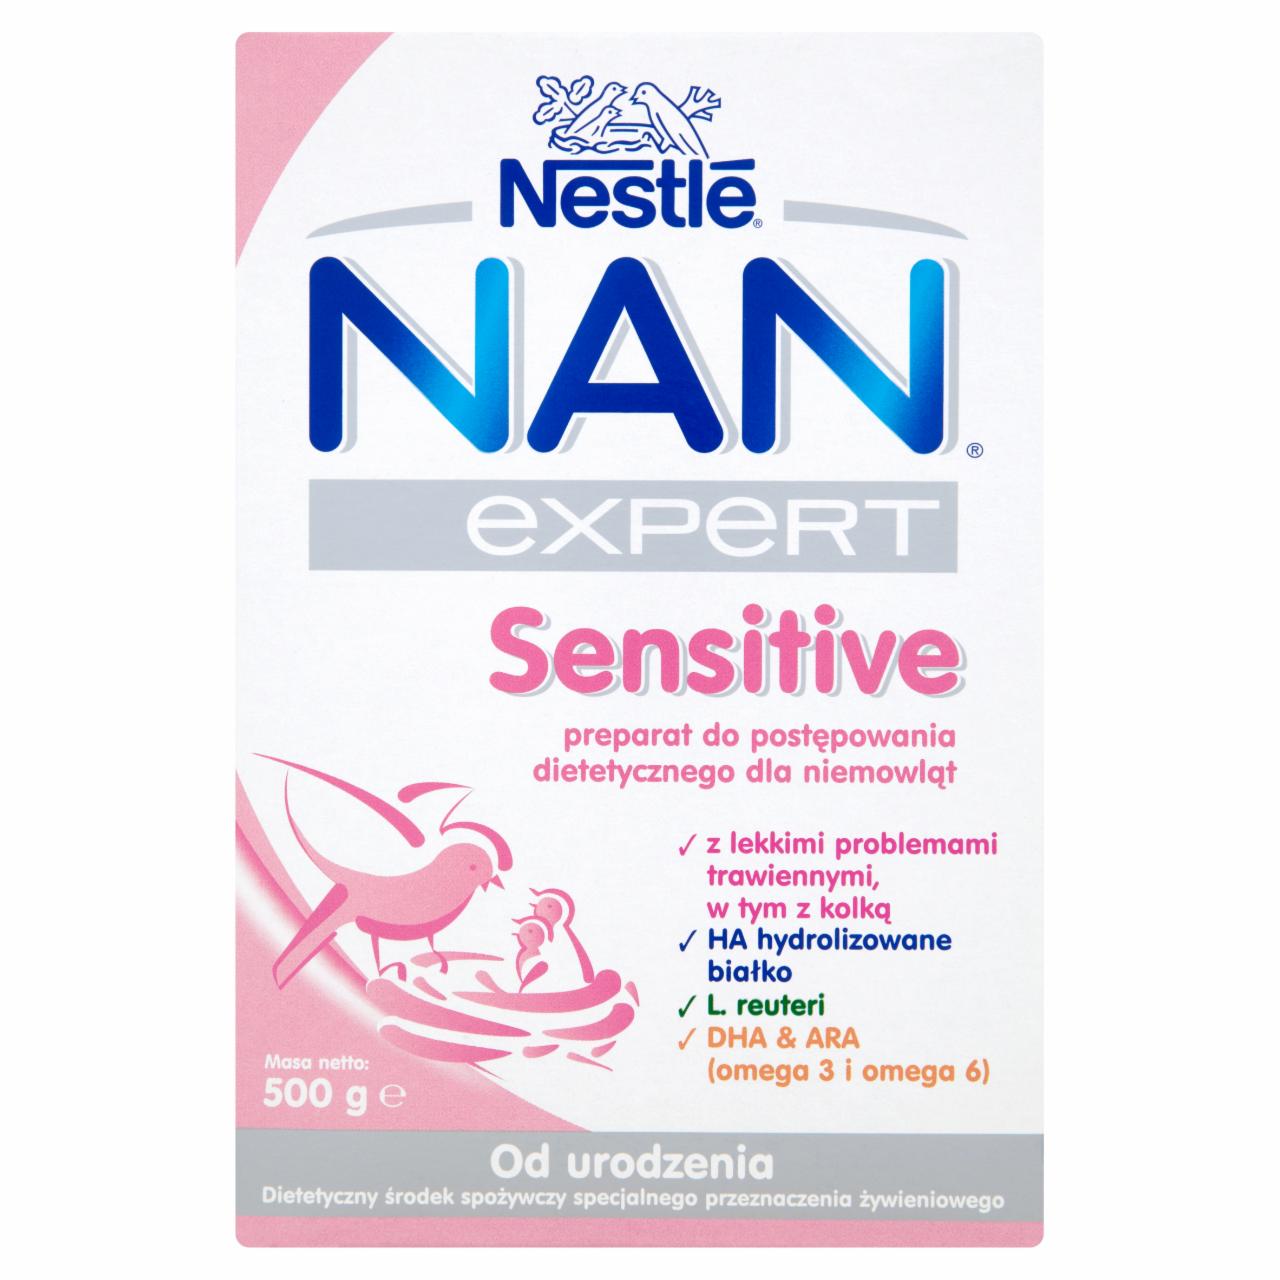 Zdjęcia - Nestlé Nan Expert Sensitive Preparat do postępowania dietetycznego dla niemowląt od urodzenia 500 g